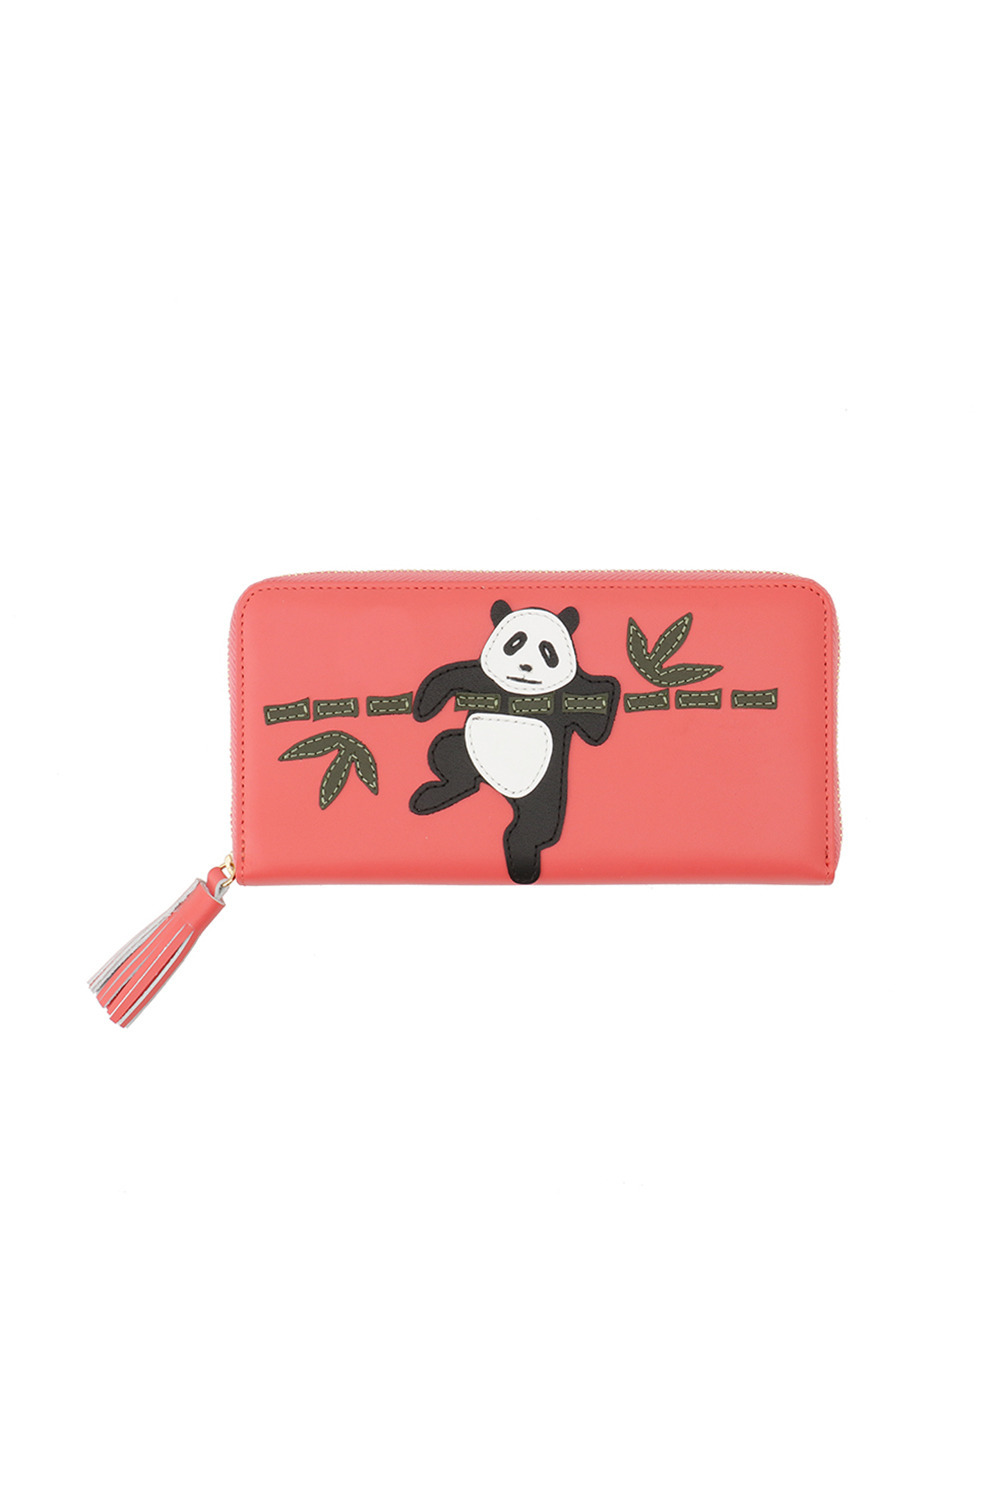 Bamboo PANDA large wallet 詳細画像 ピンク